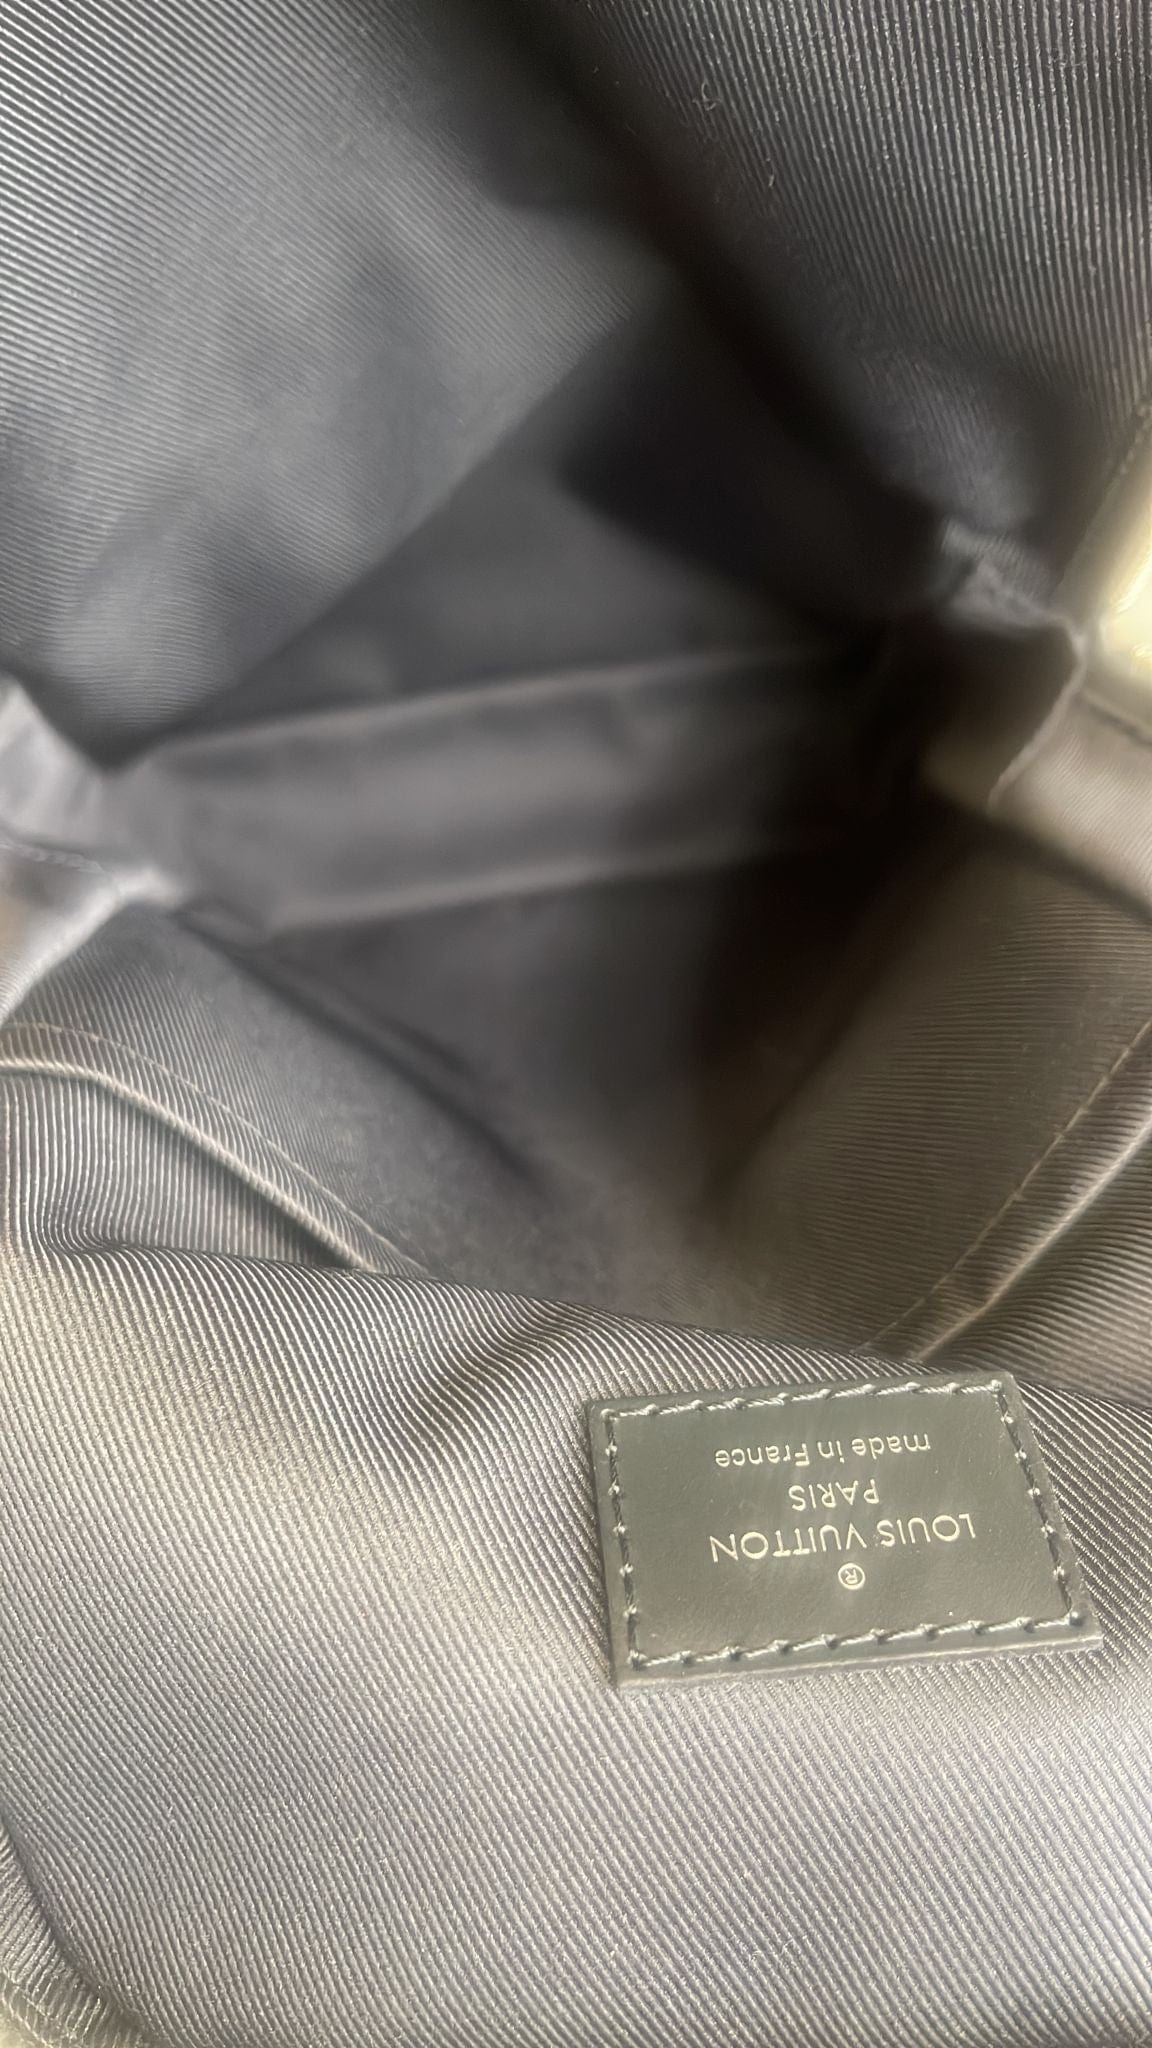 Louis Vuitton Avenue Sling Leather Bag